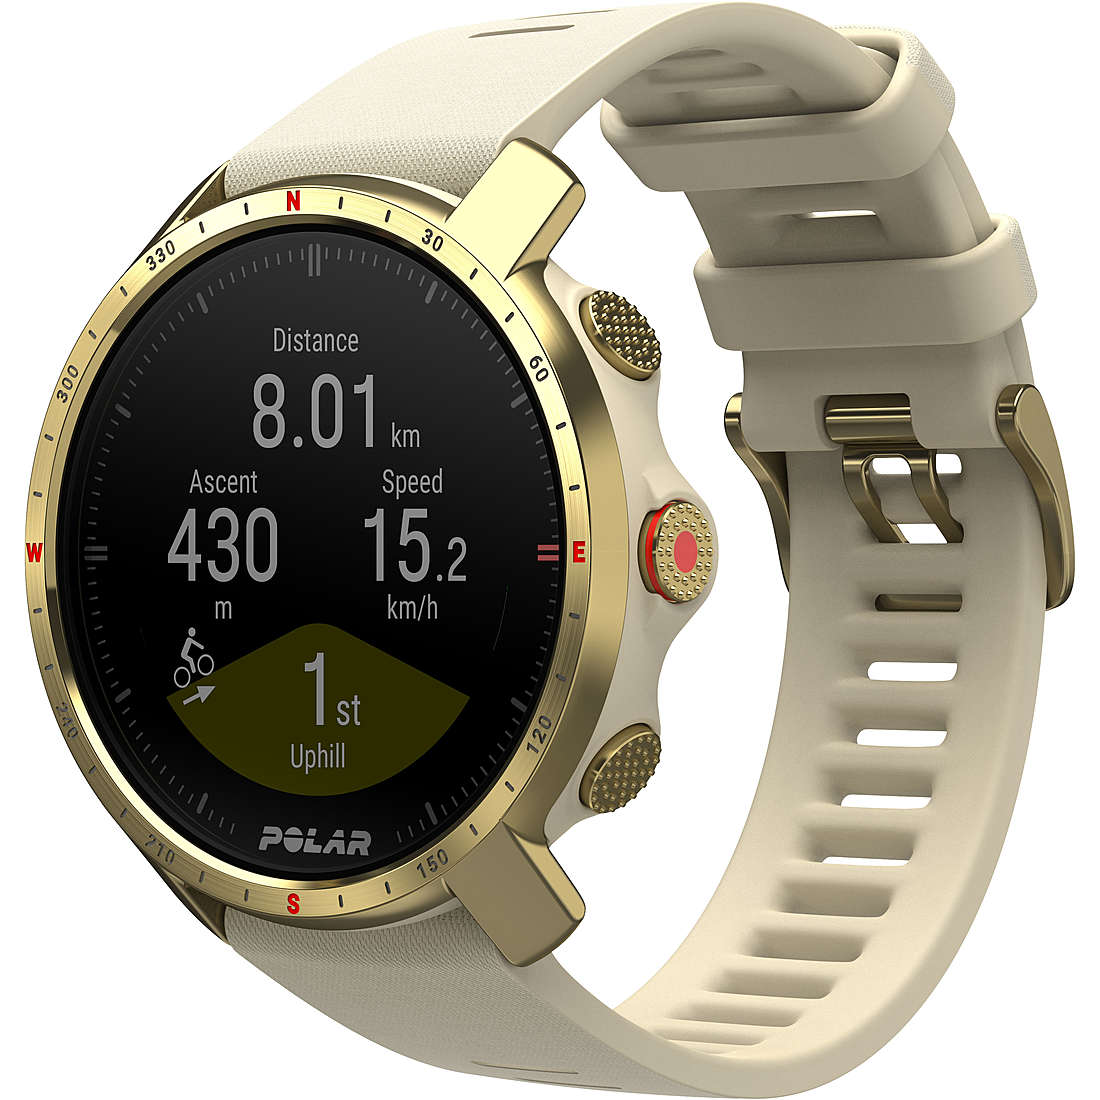 Uhr Smartwatch mann Polar Grit X Pro 90085776